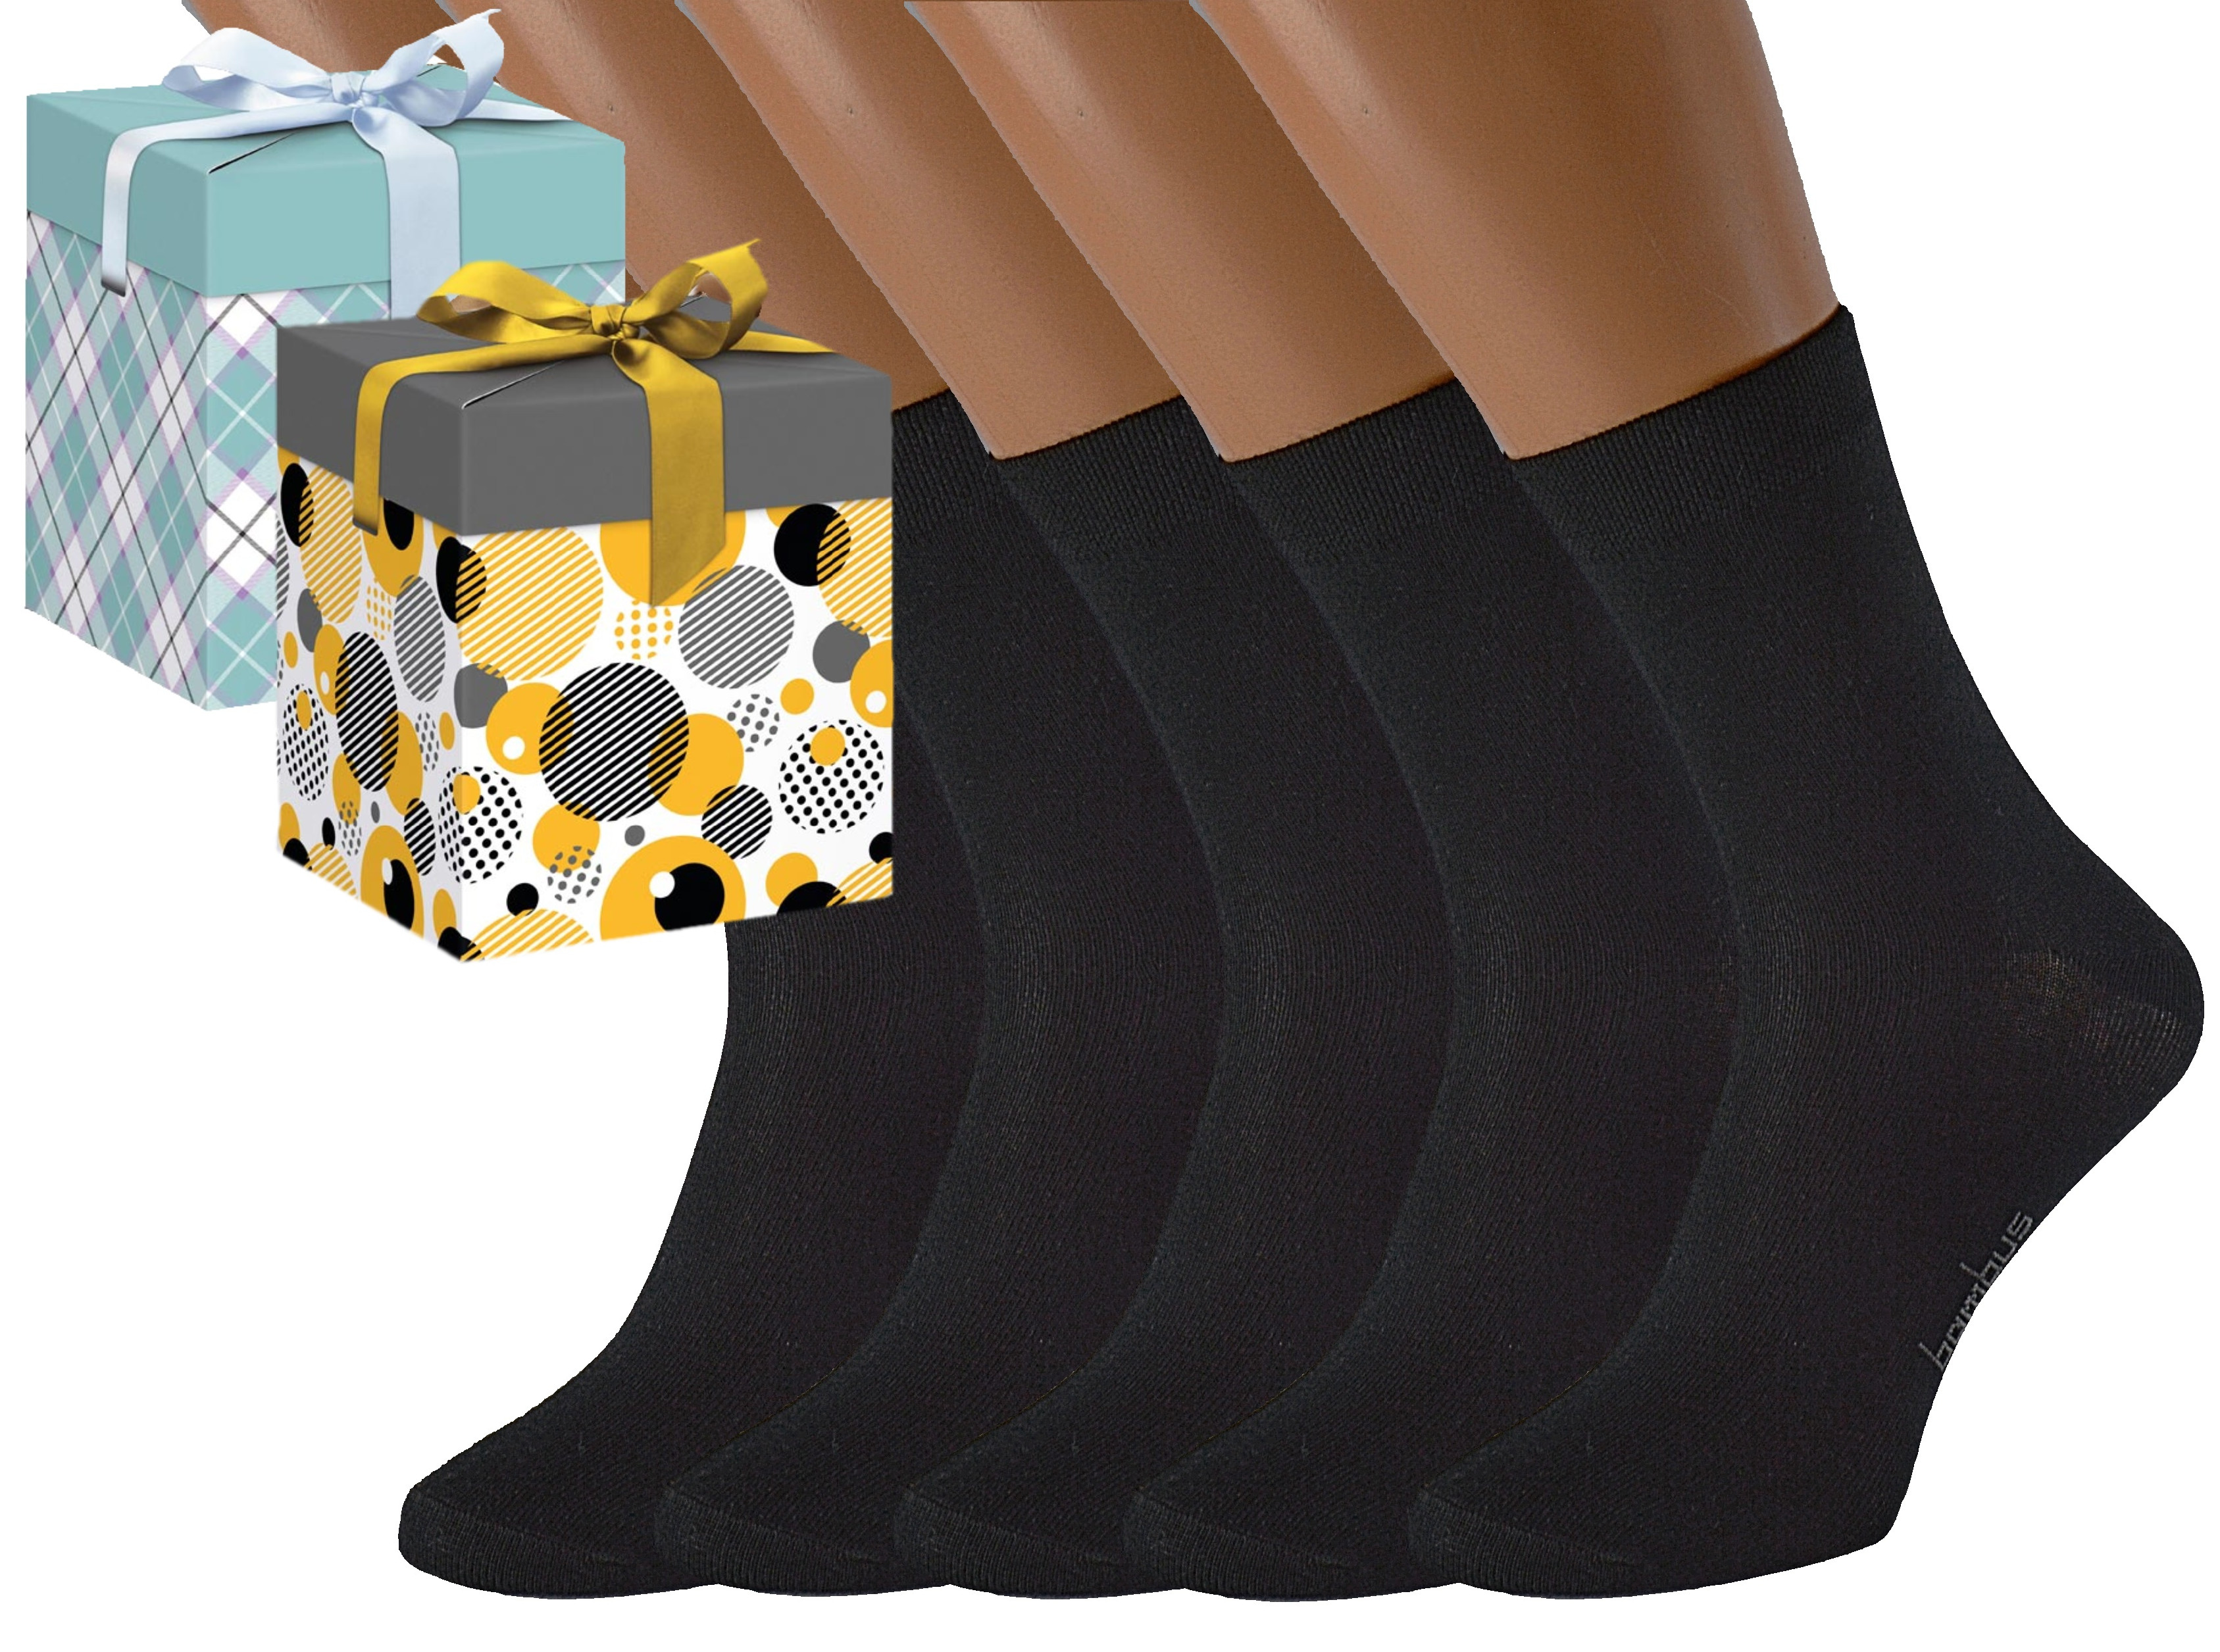 Produkt Dárkové balení 5 párů bambusových ponožek BAMBOO Barva: Černé, Velikost: EUR 38-41 (UK 5-7), Zvolte variantu dárkového balení: Mint kostkovaná